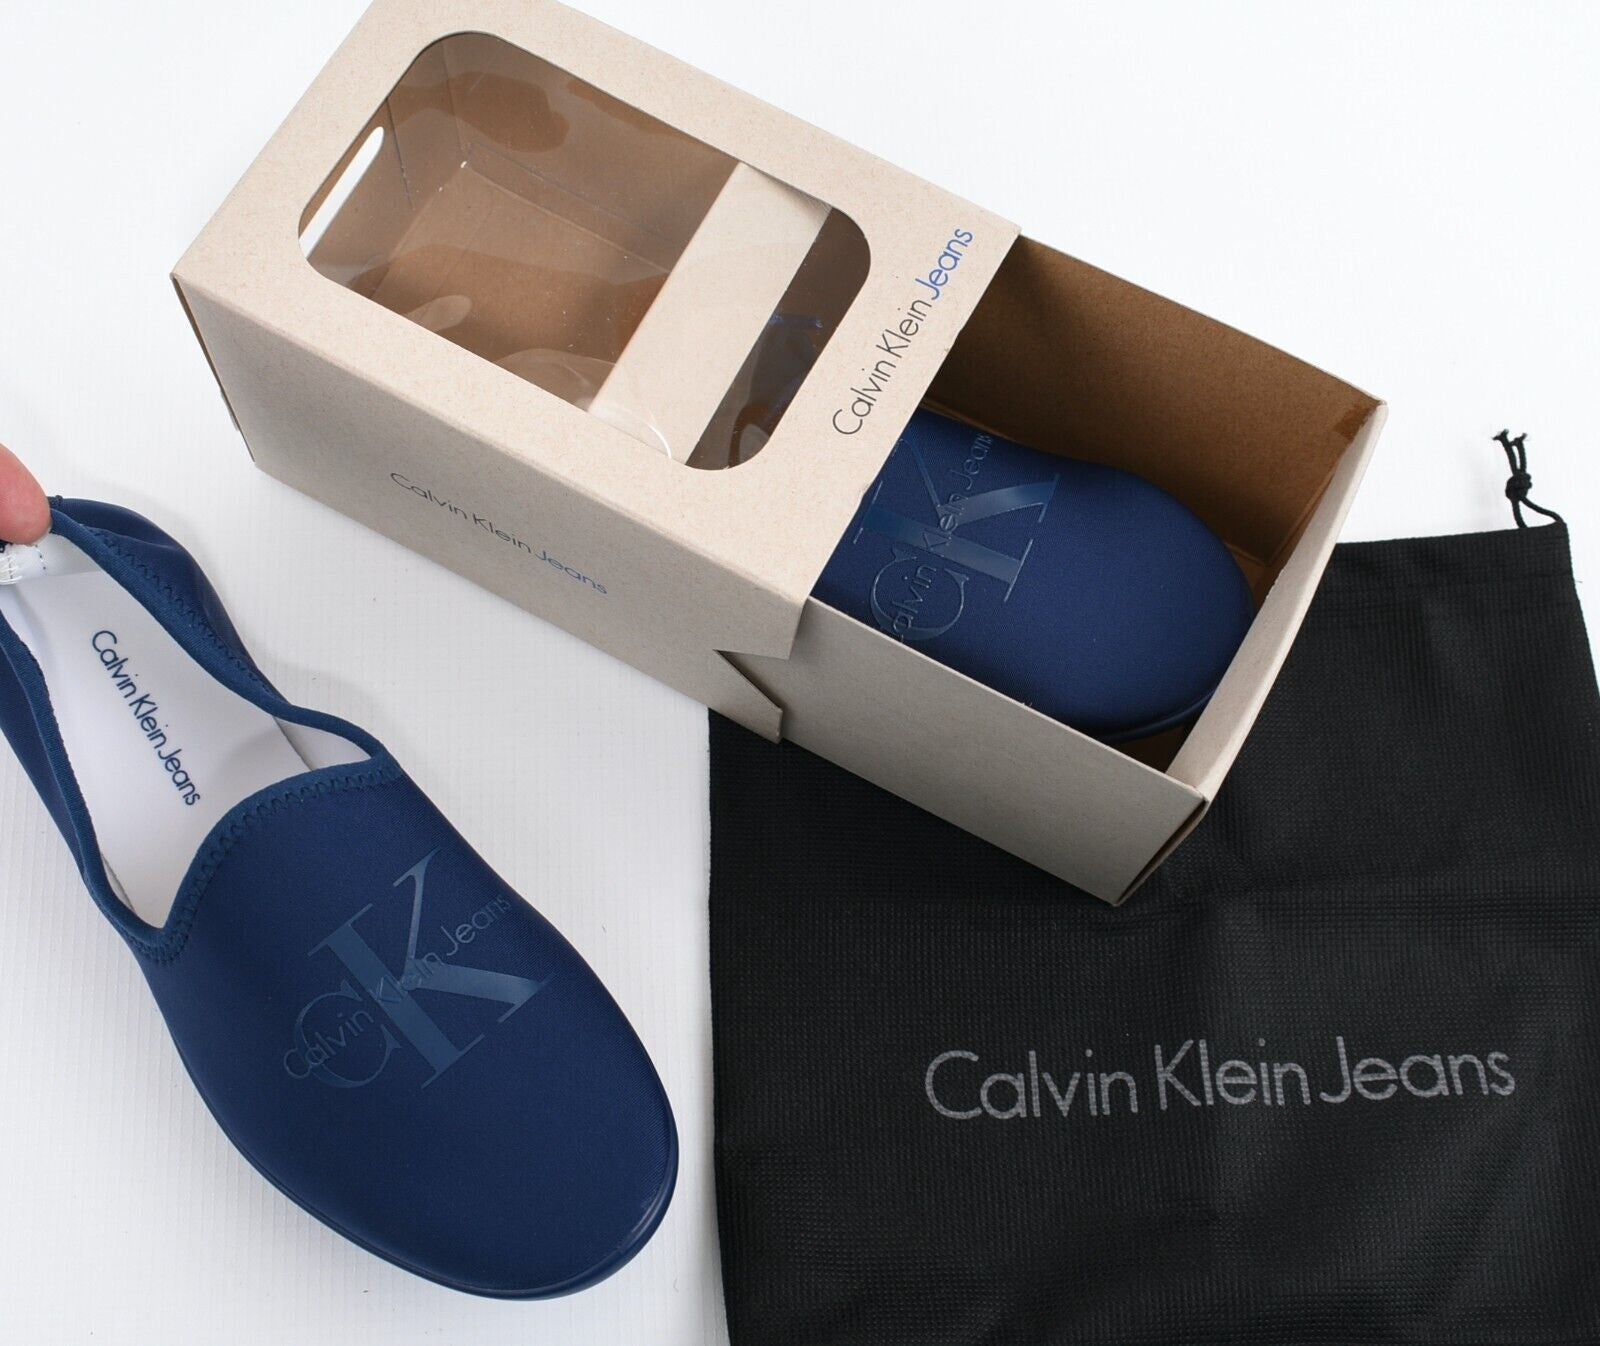 CALVIN KLEIN JEANS Women's TRACY Neoprene Slippers, Blue/White, size M (UK 6)